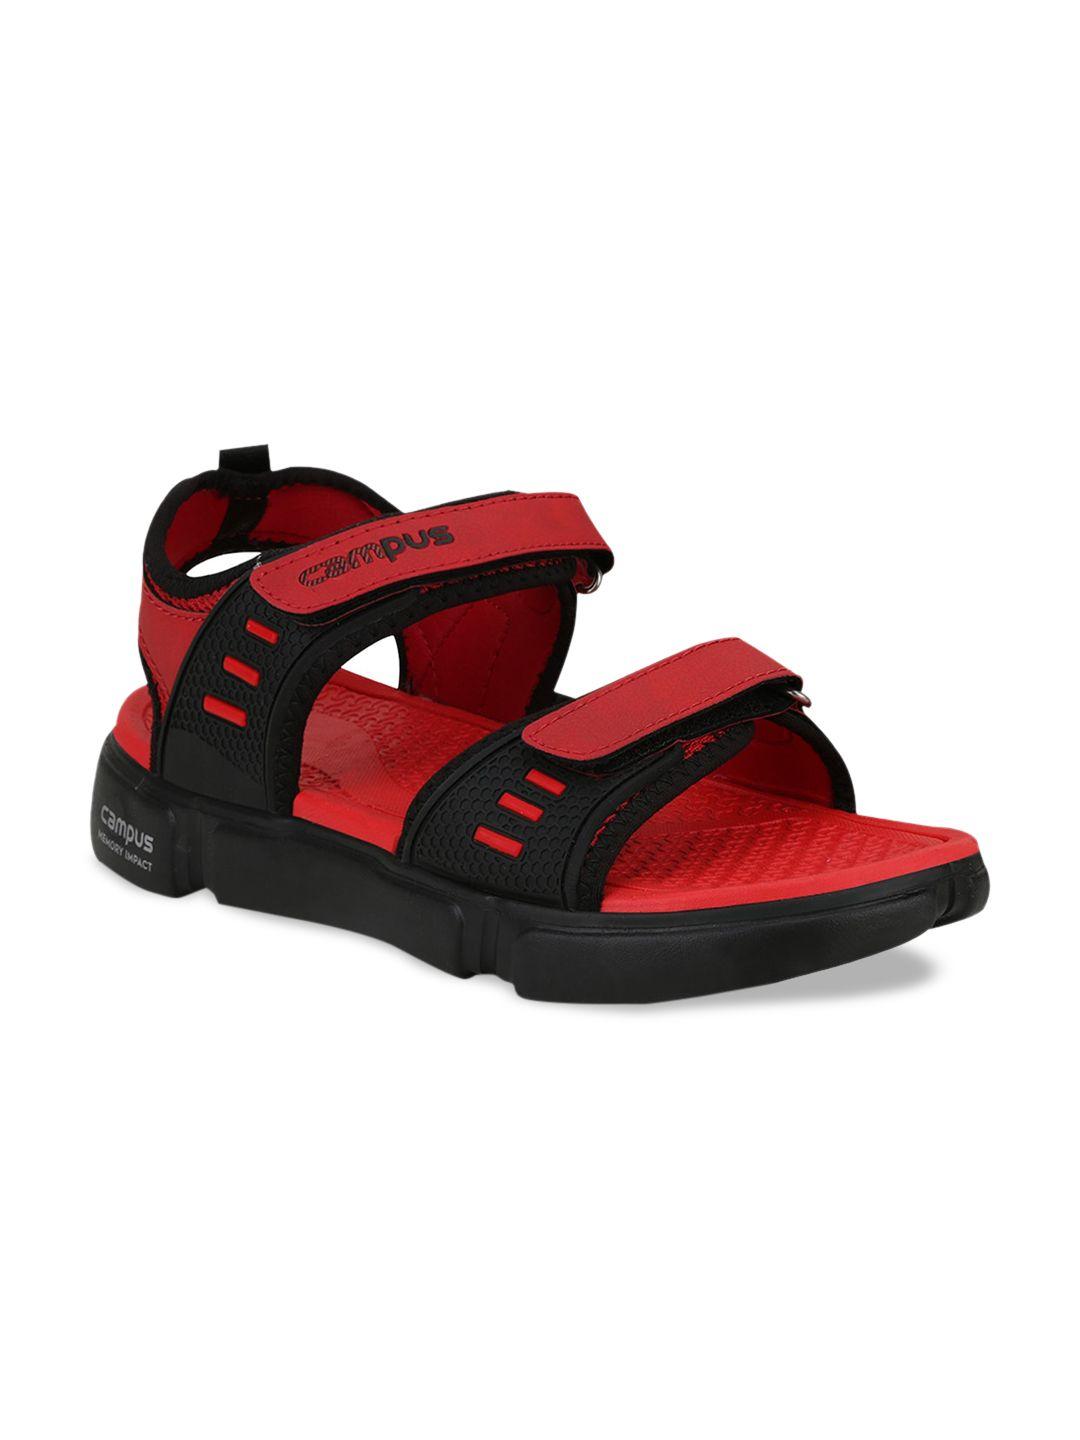 campus men red & black comfort sandals